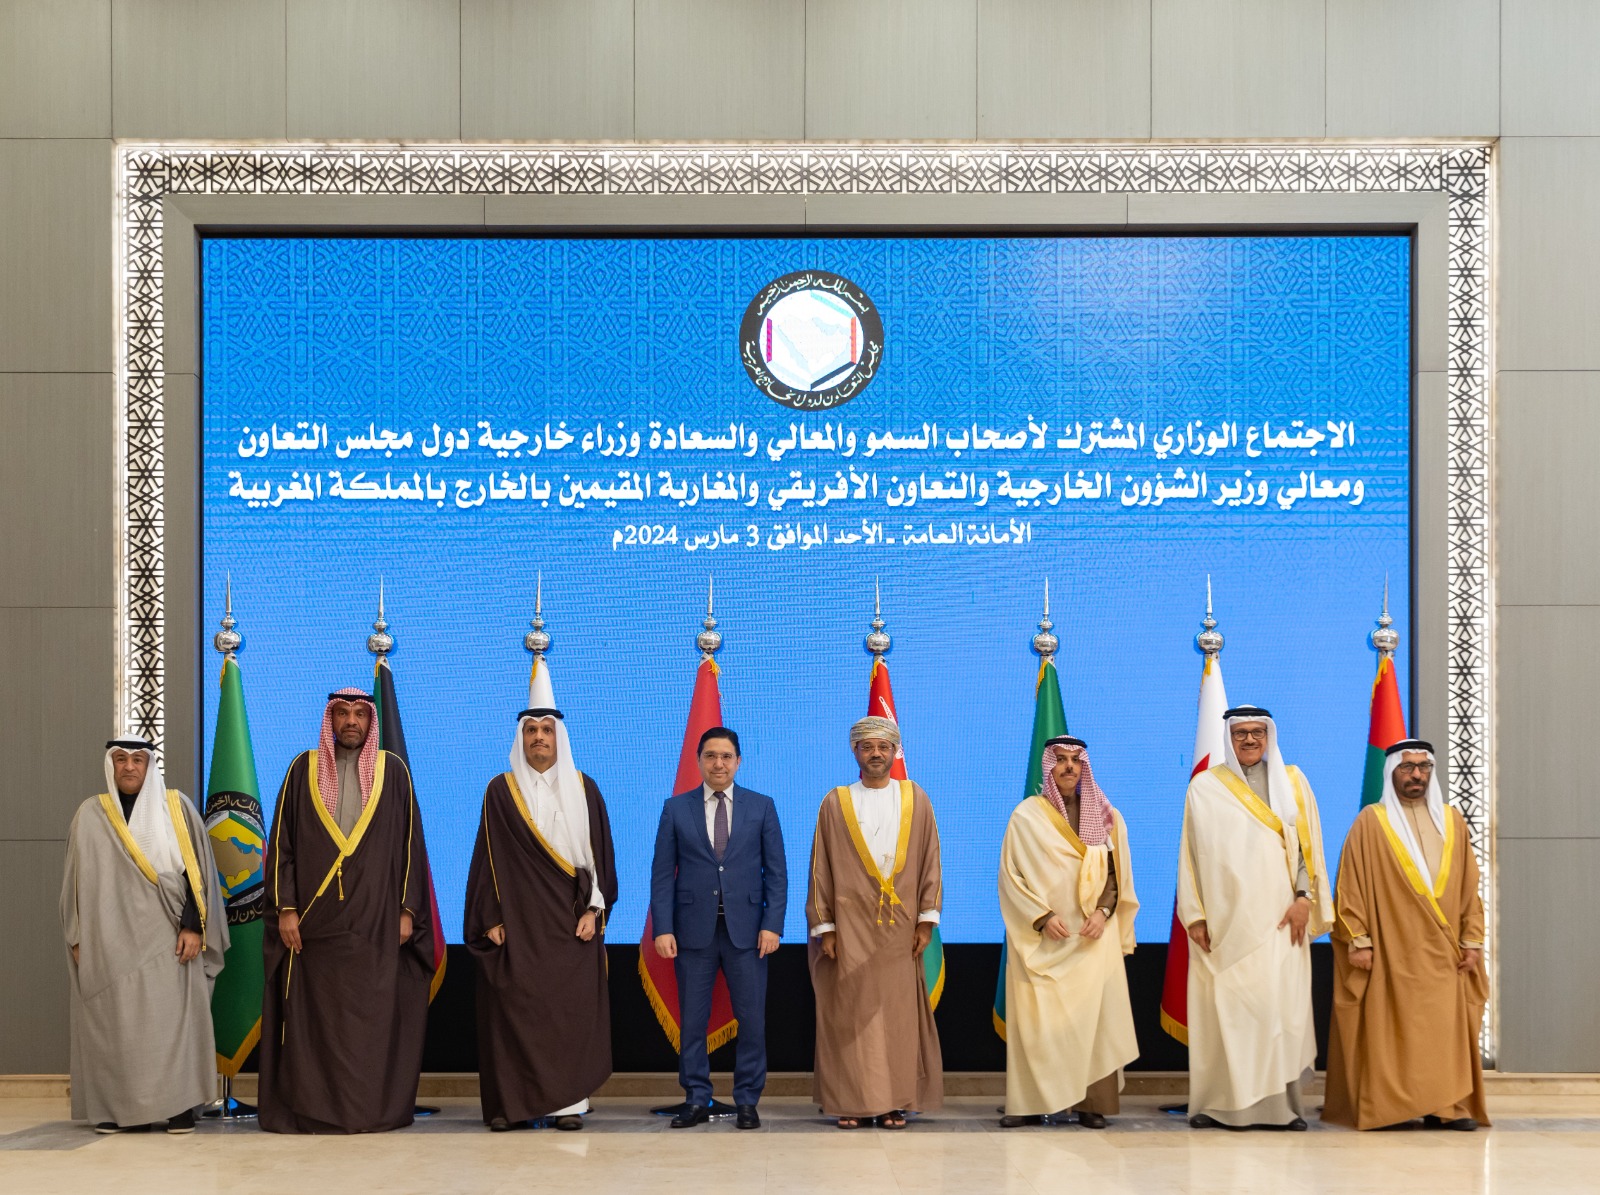 صورة جماعية لوزاراء خارجية مجلس التعاون الخليجي ووزير الخارجية المغربي ناصر بوريطة في الرياض. 3 مارس 2024